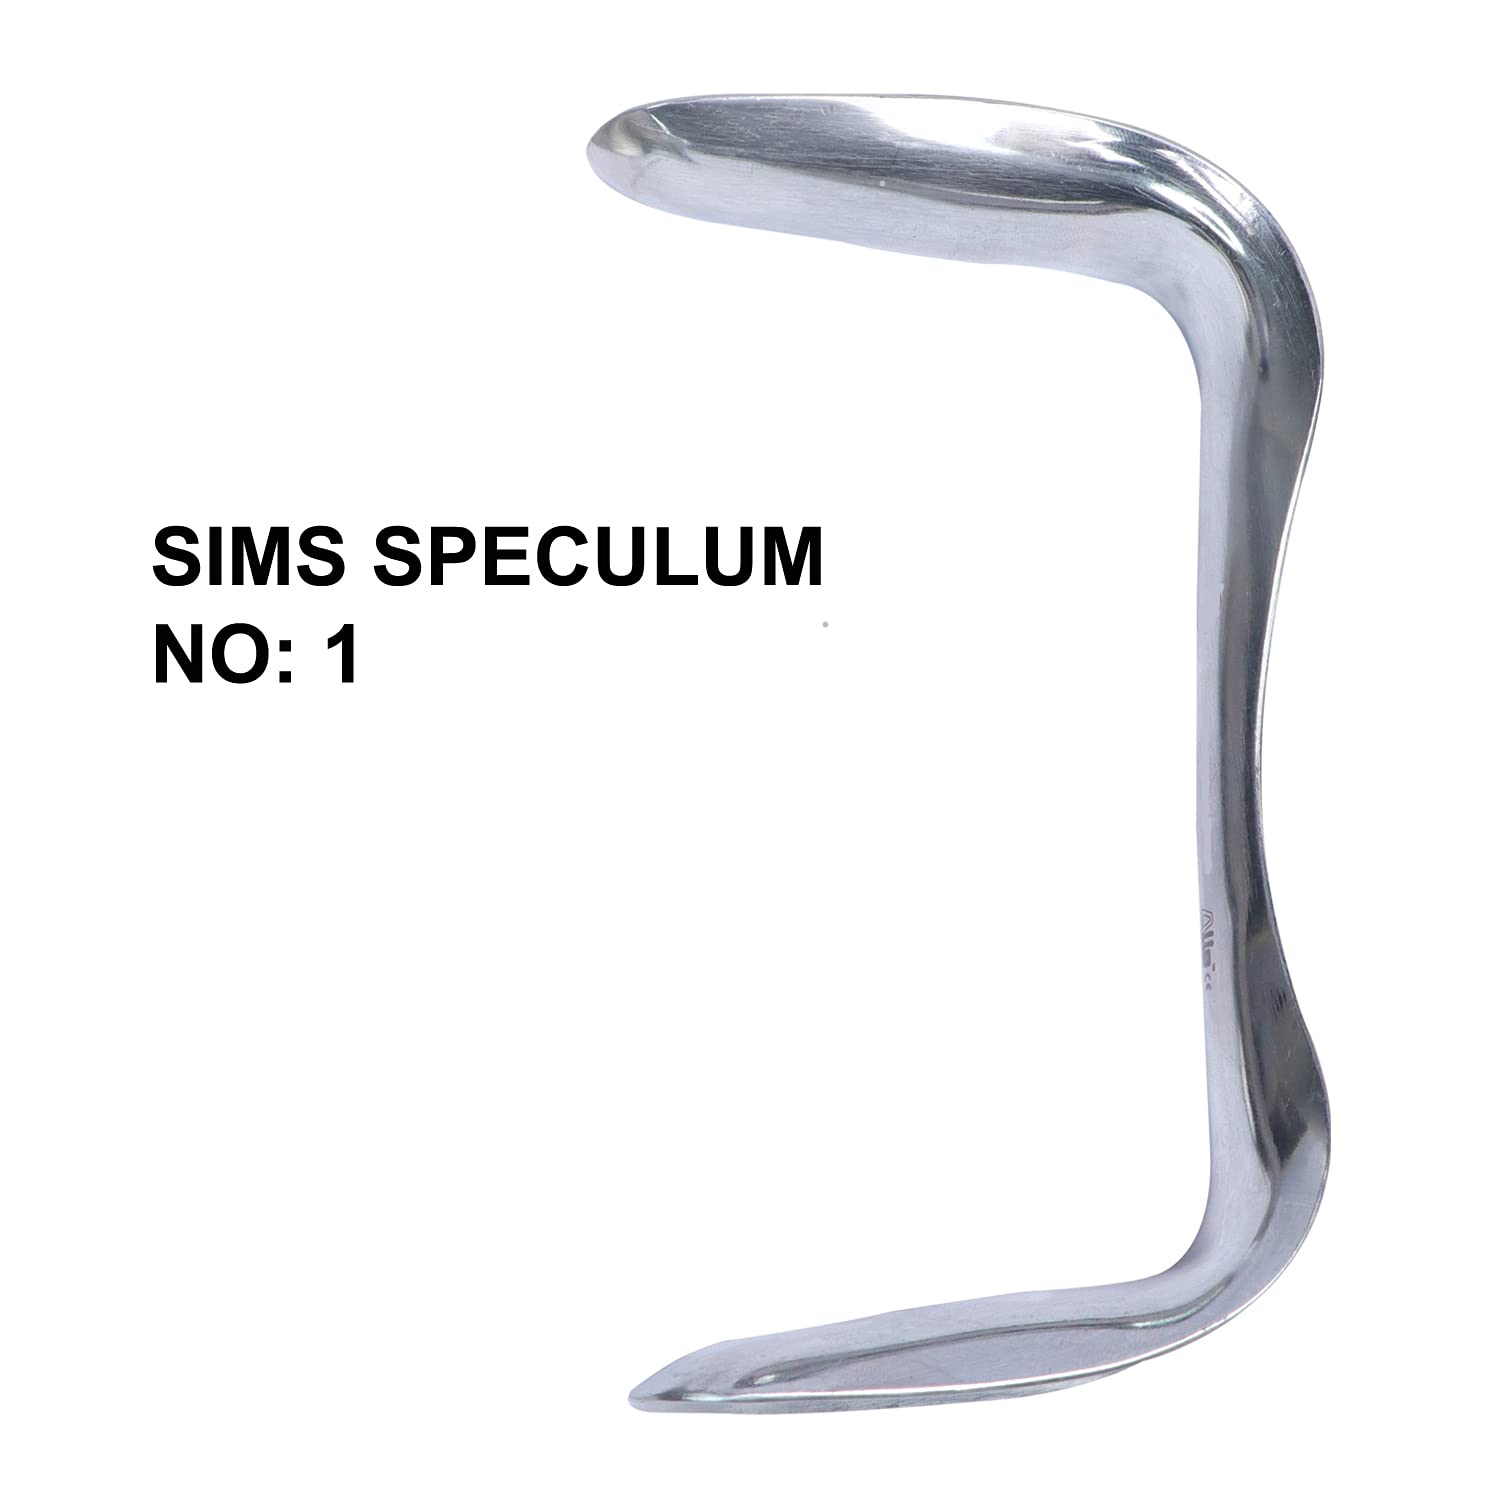 Sims' Vaginal Speculum